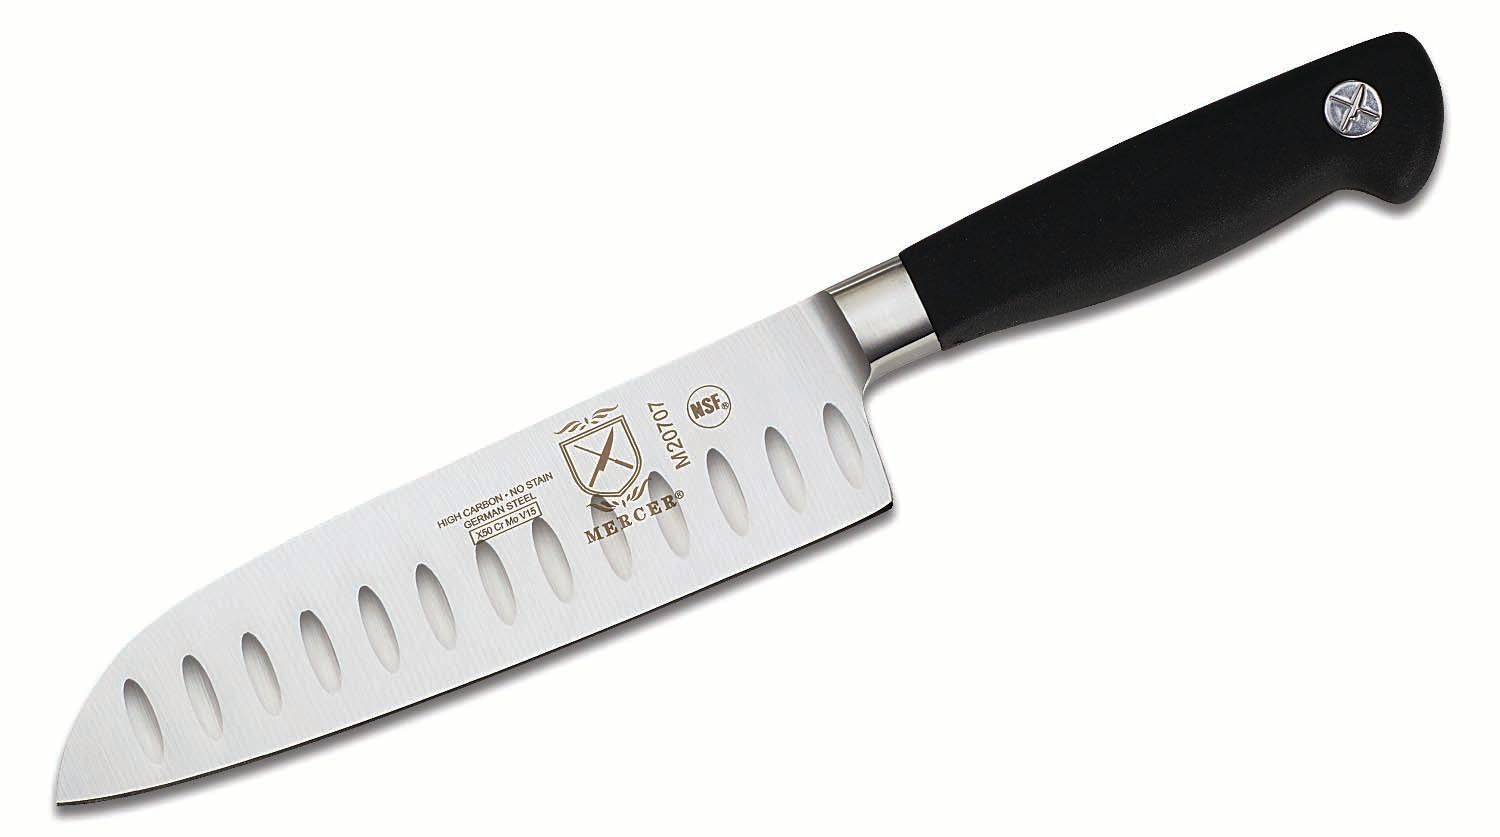 Mercer Cutlery Genesis 10-Piece Knife Case Set